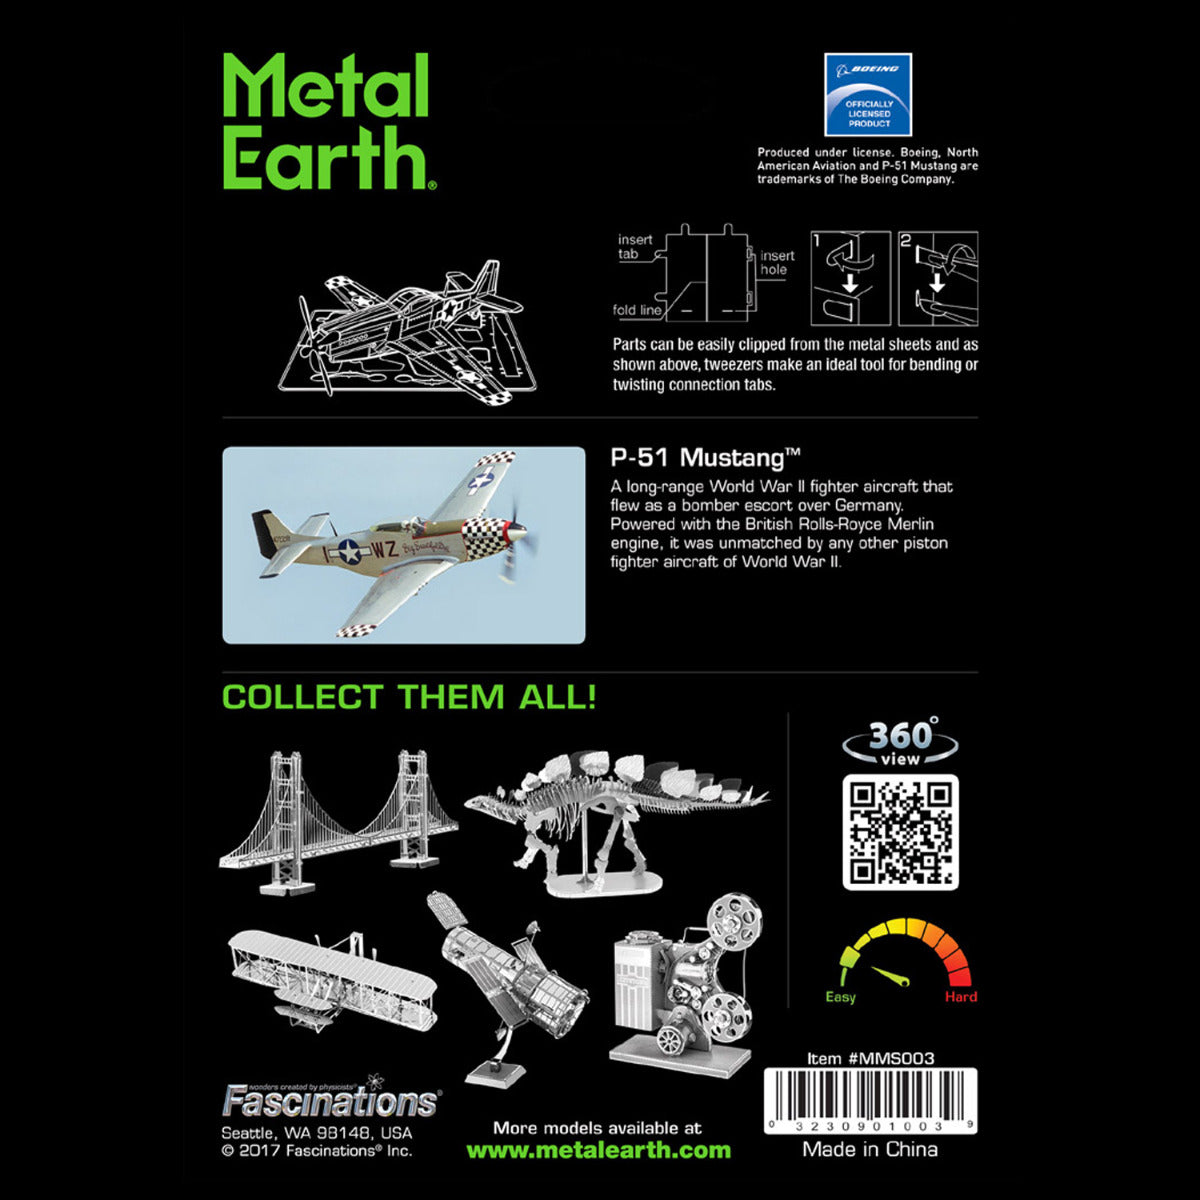 Metal Earth Metallbausätze MMS003 Mustang P-51 Flugzeug Metall Modell